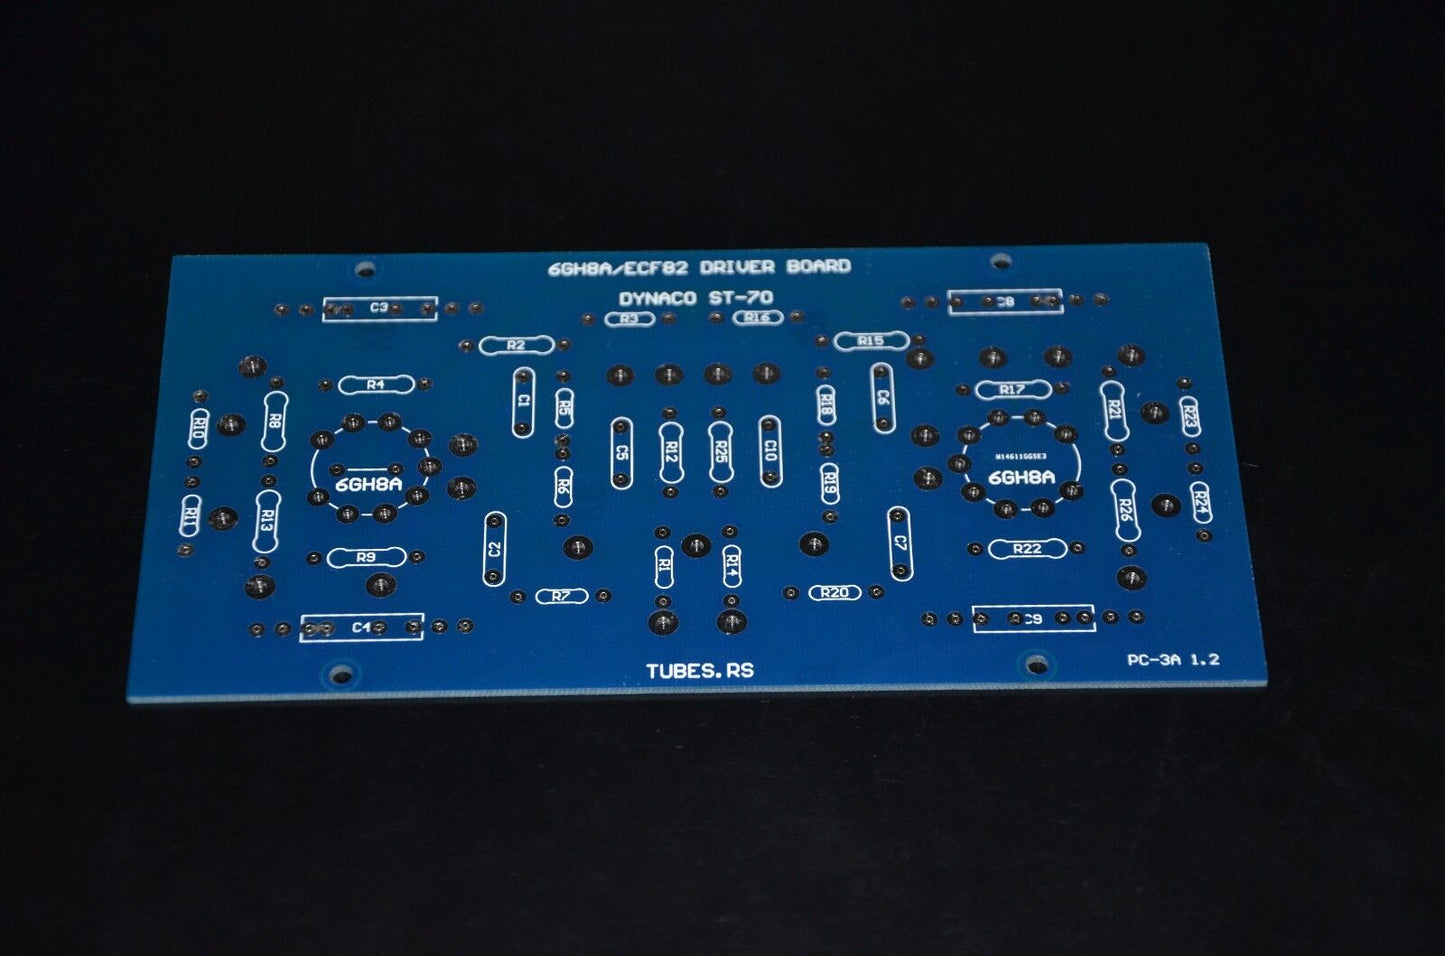 DYNACO ST-70 6GH8A / 6GH8 PC-3 DRIVER BOARD PARTIAL KIT (PCB + TUBES)